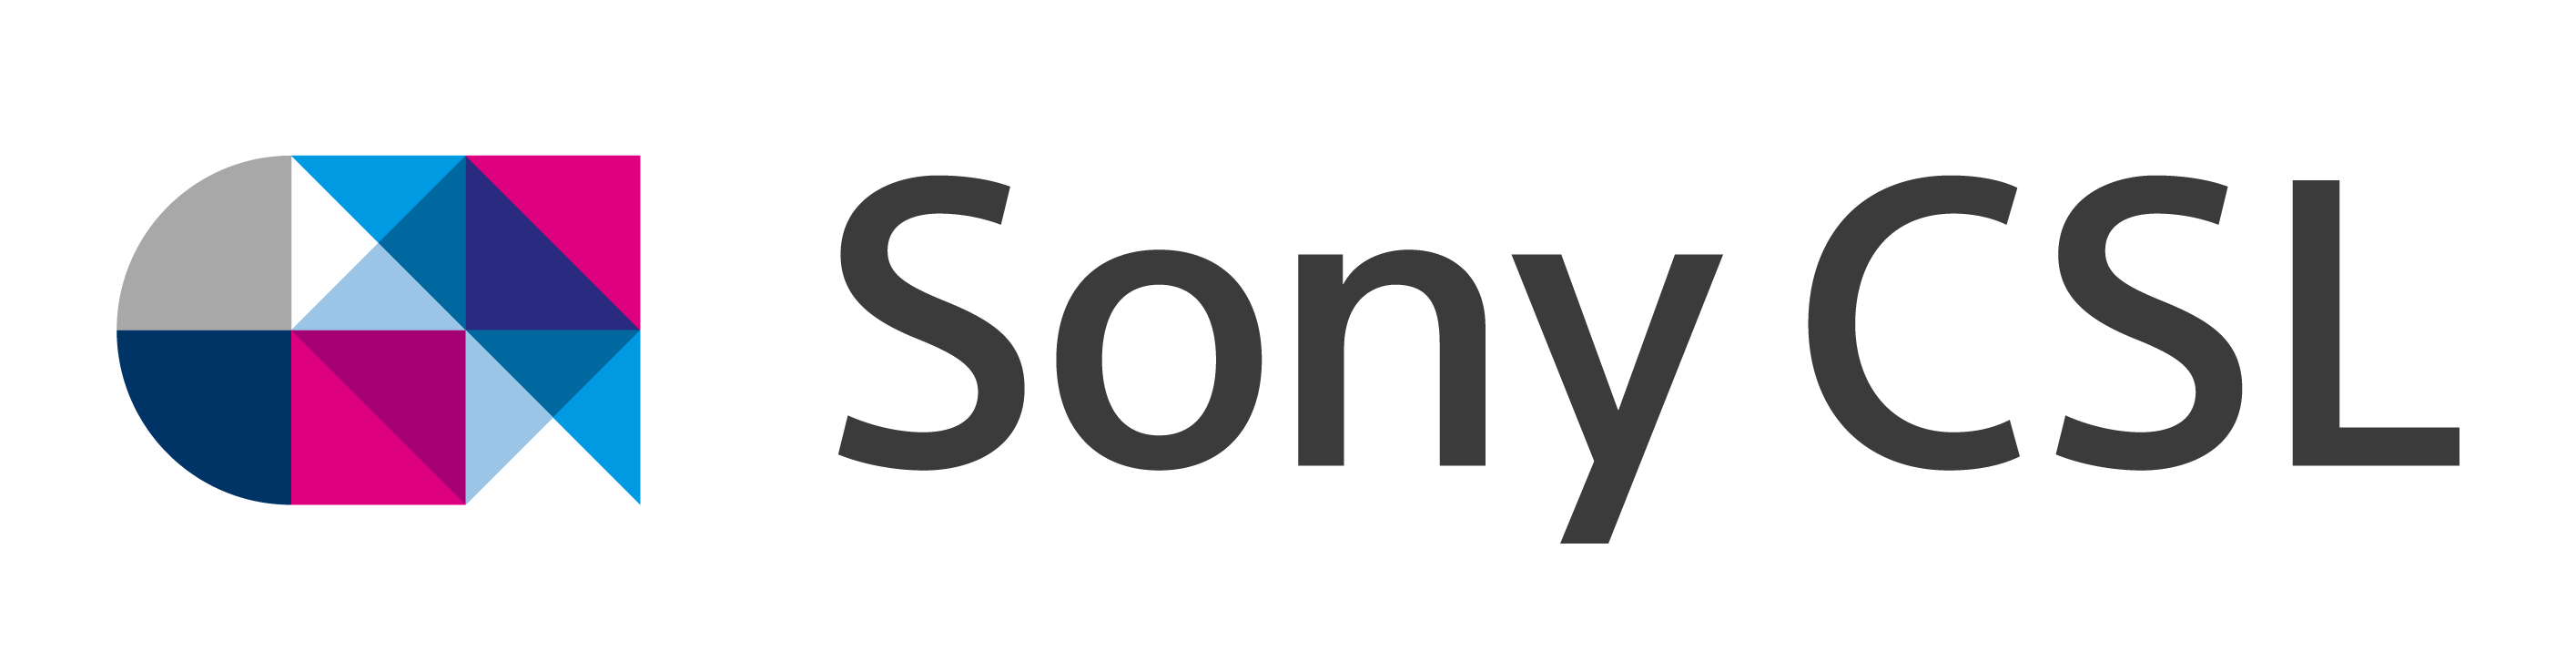 Sony CSL